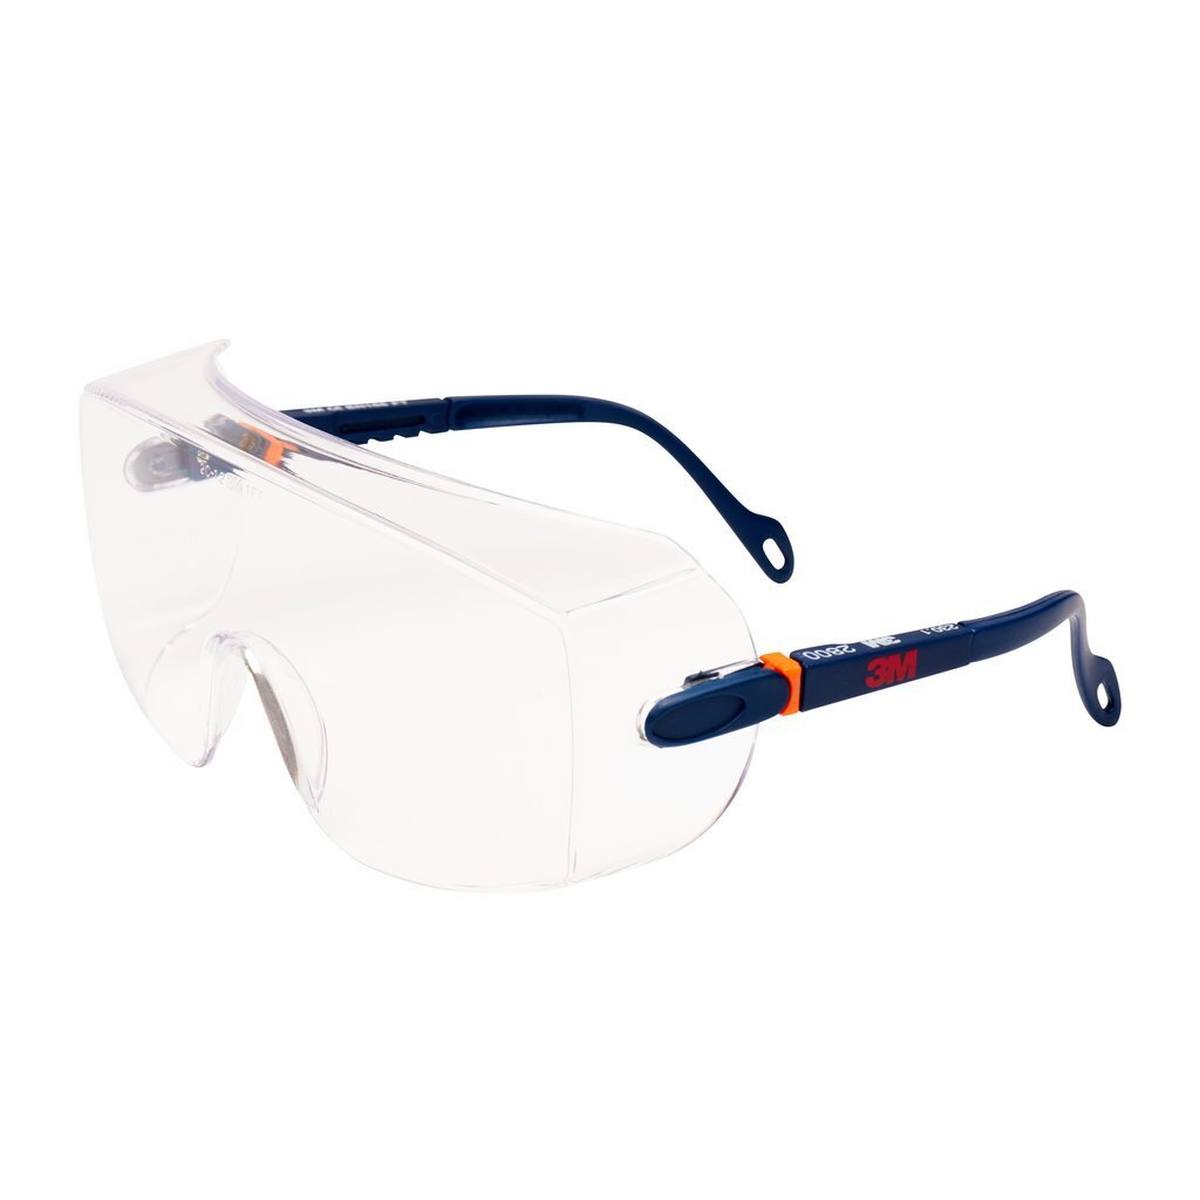 3M 2800 Schutzbrille AS/UV, PC, klar, einstellbar, ideal als Überbrille für Brillenträger